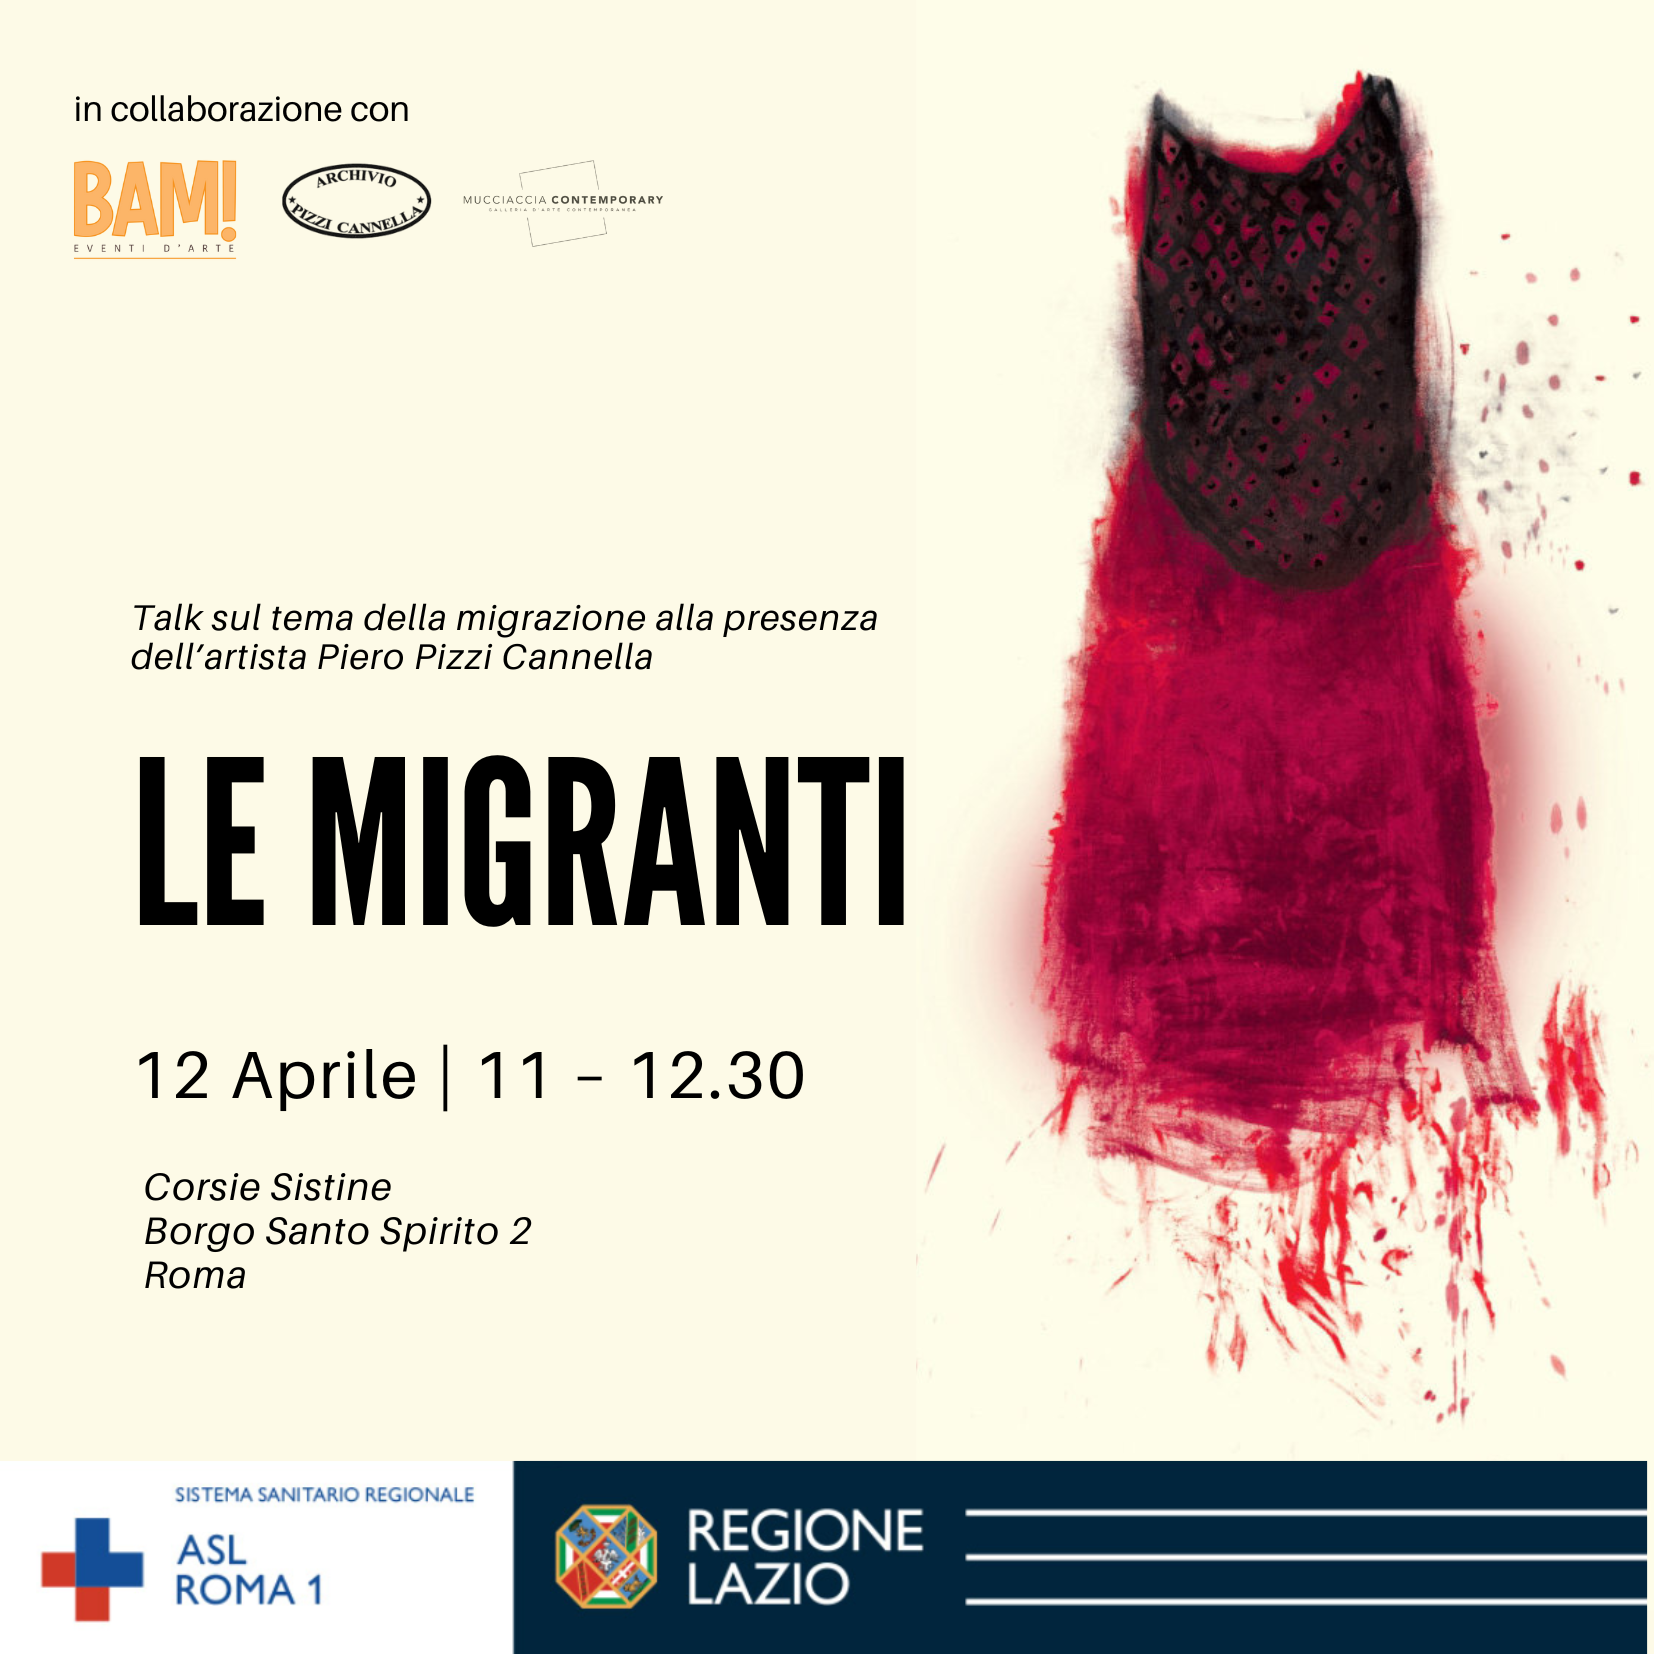 12 aprile Talk “Le Migranti” nell’ambito della mostra di Piero Pizzi Cannella presso le Corsie Sistine